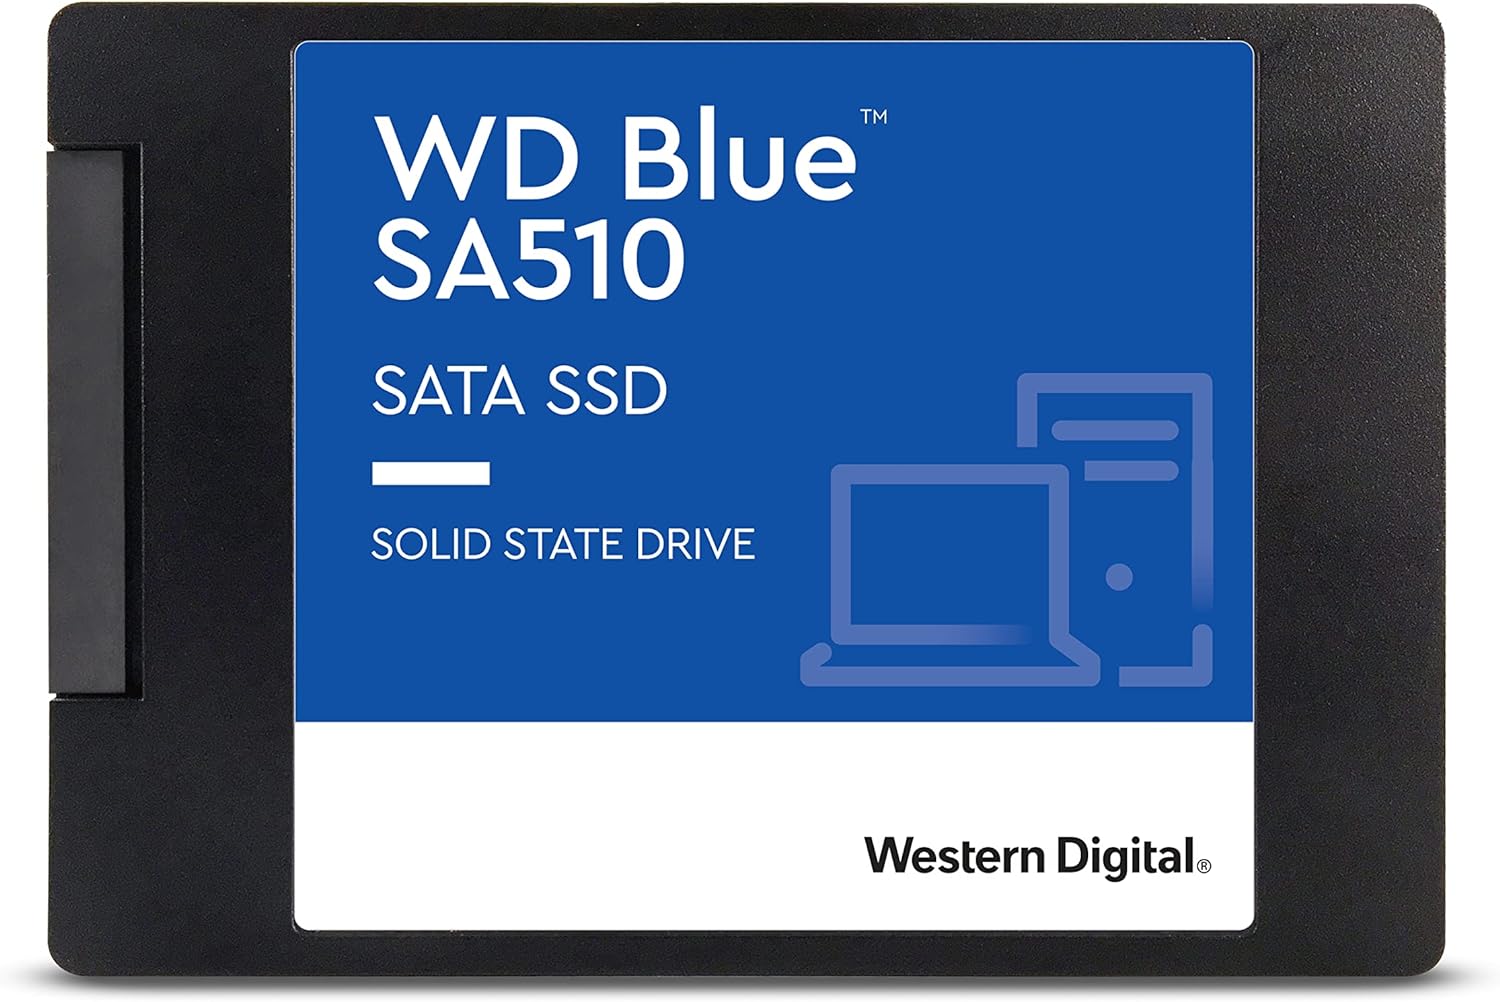 WESTER DIGITAL 4TB WD BLUE  SA510 SATA UNIDAD DE ESTADO SOLIDO SSD - SATA III 6 GB/s, 2.5"/7MM, HASTA 560 MB/S - WDS400T3B0A